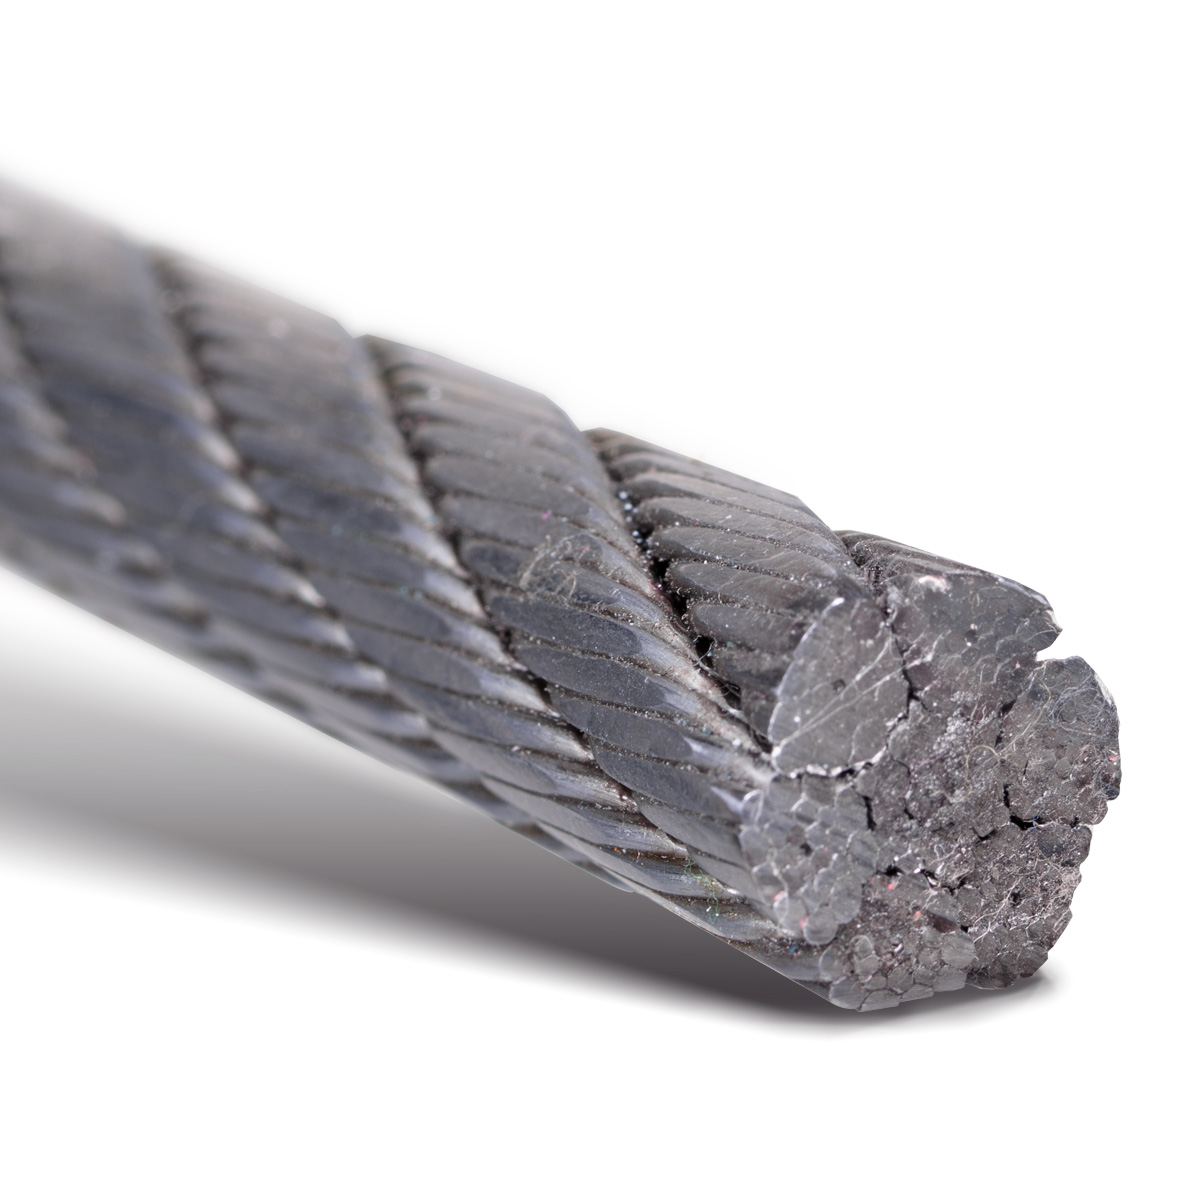 Drahtseile24 - Câble métallique en acier - Câble forestier, pour